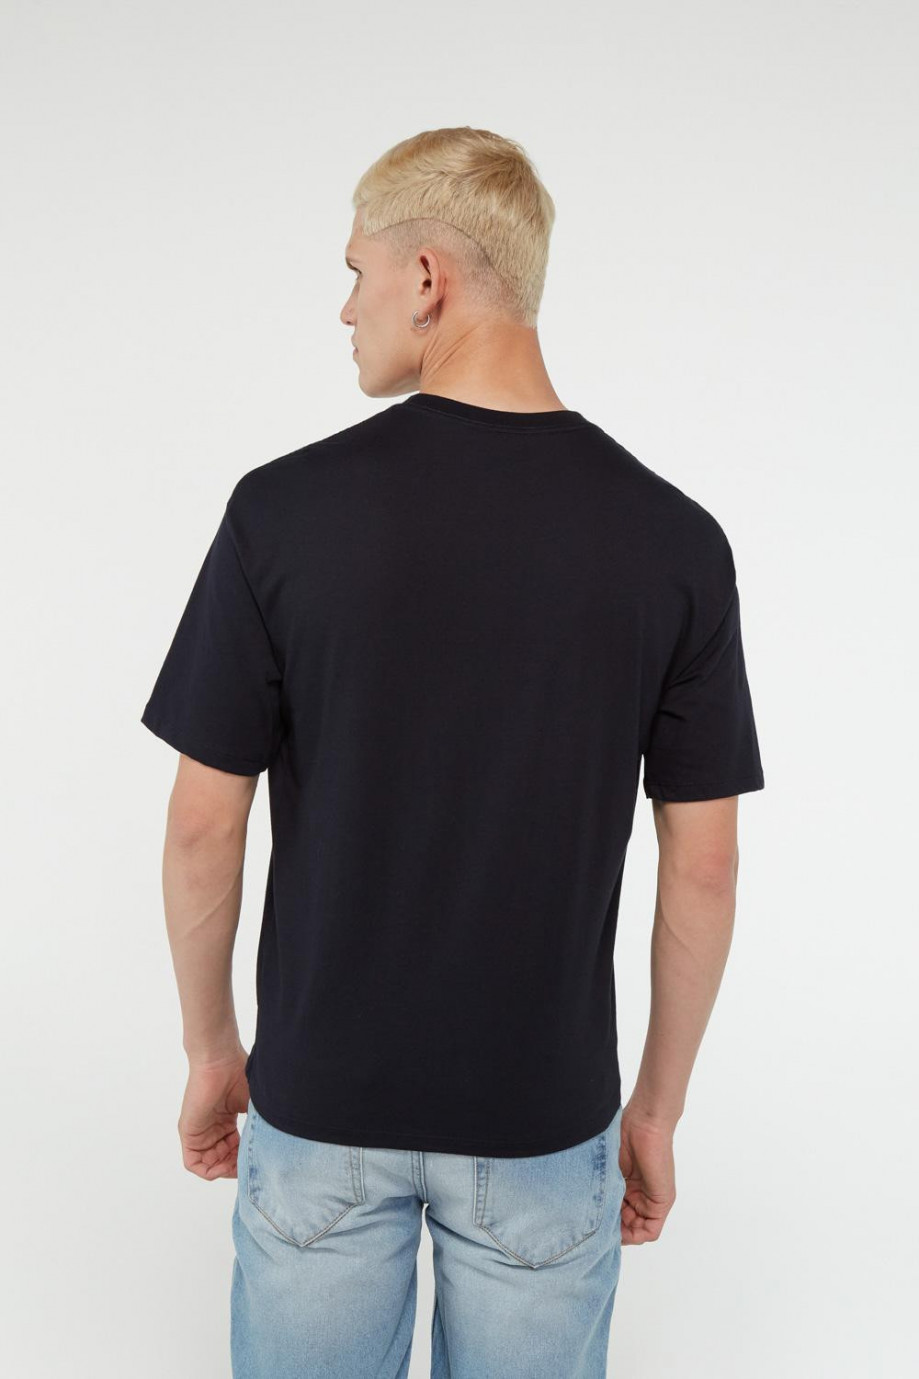 Camiseta unicolor con manga corta, cuello redondo y hombros caídos